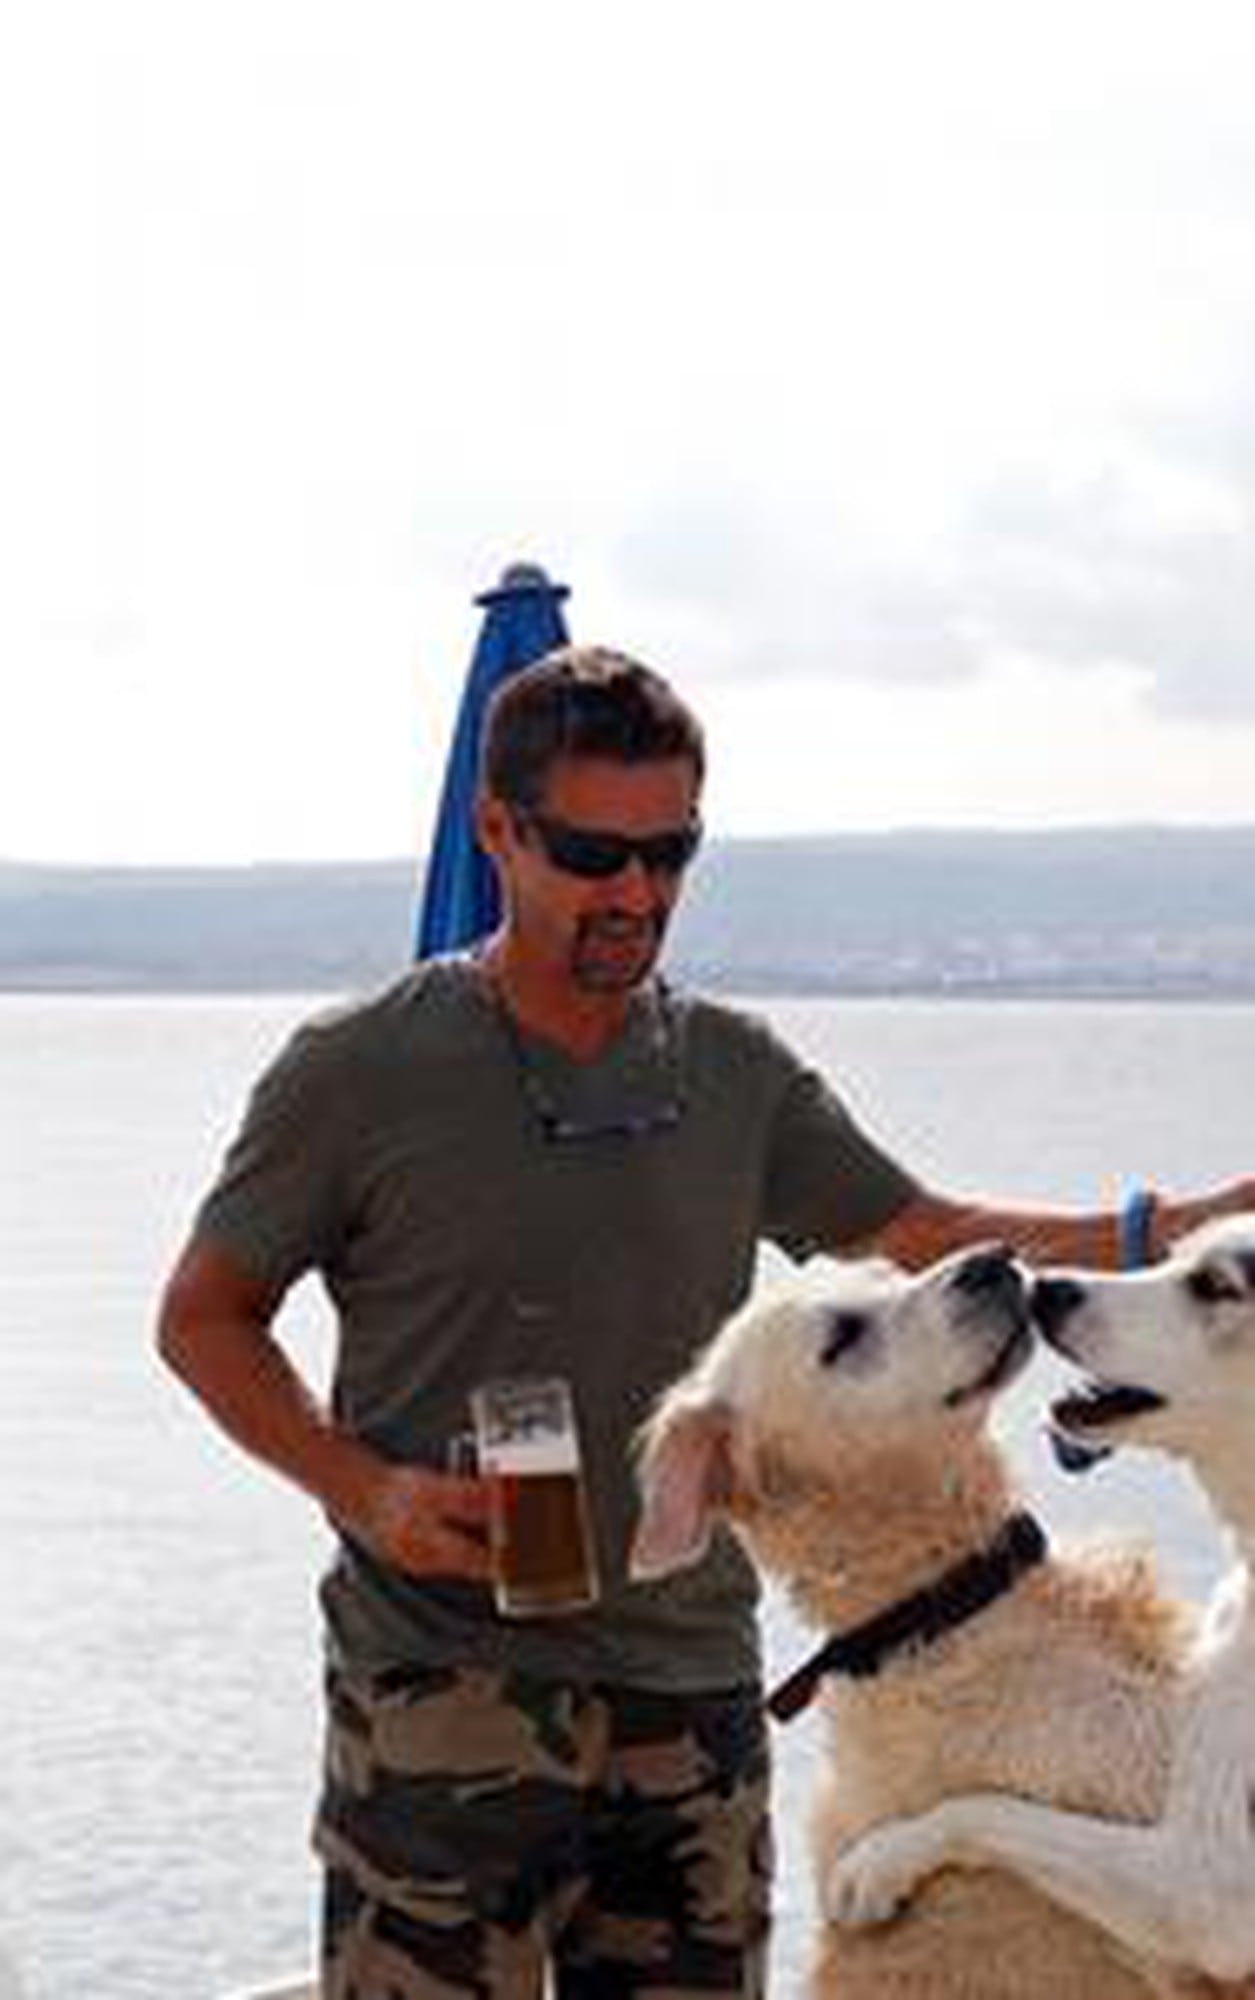 Crikvenica se promociona desde hace años como un destino para turistas con perros. (Foto: EFE)